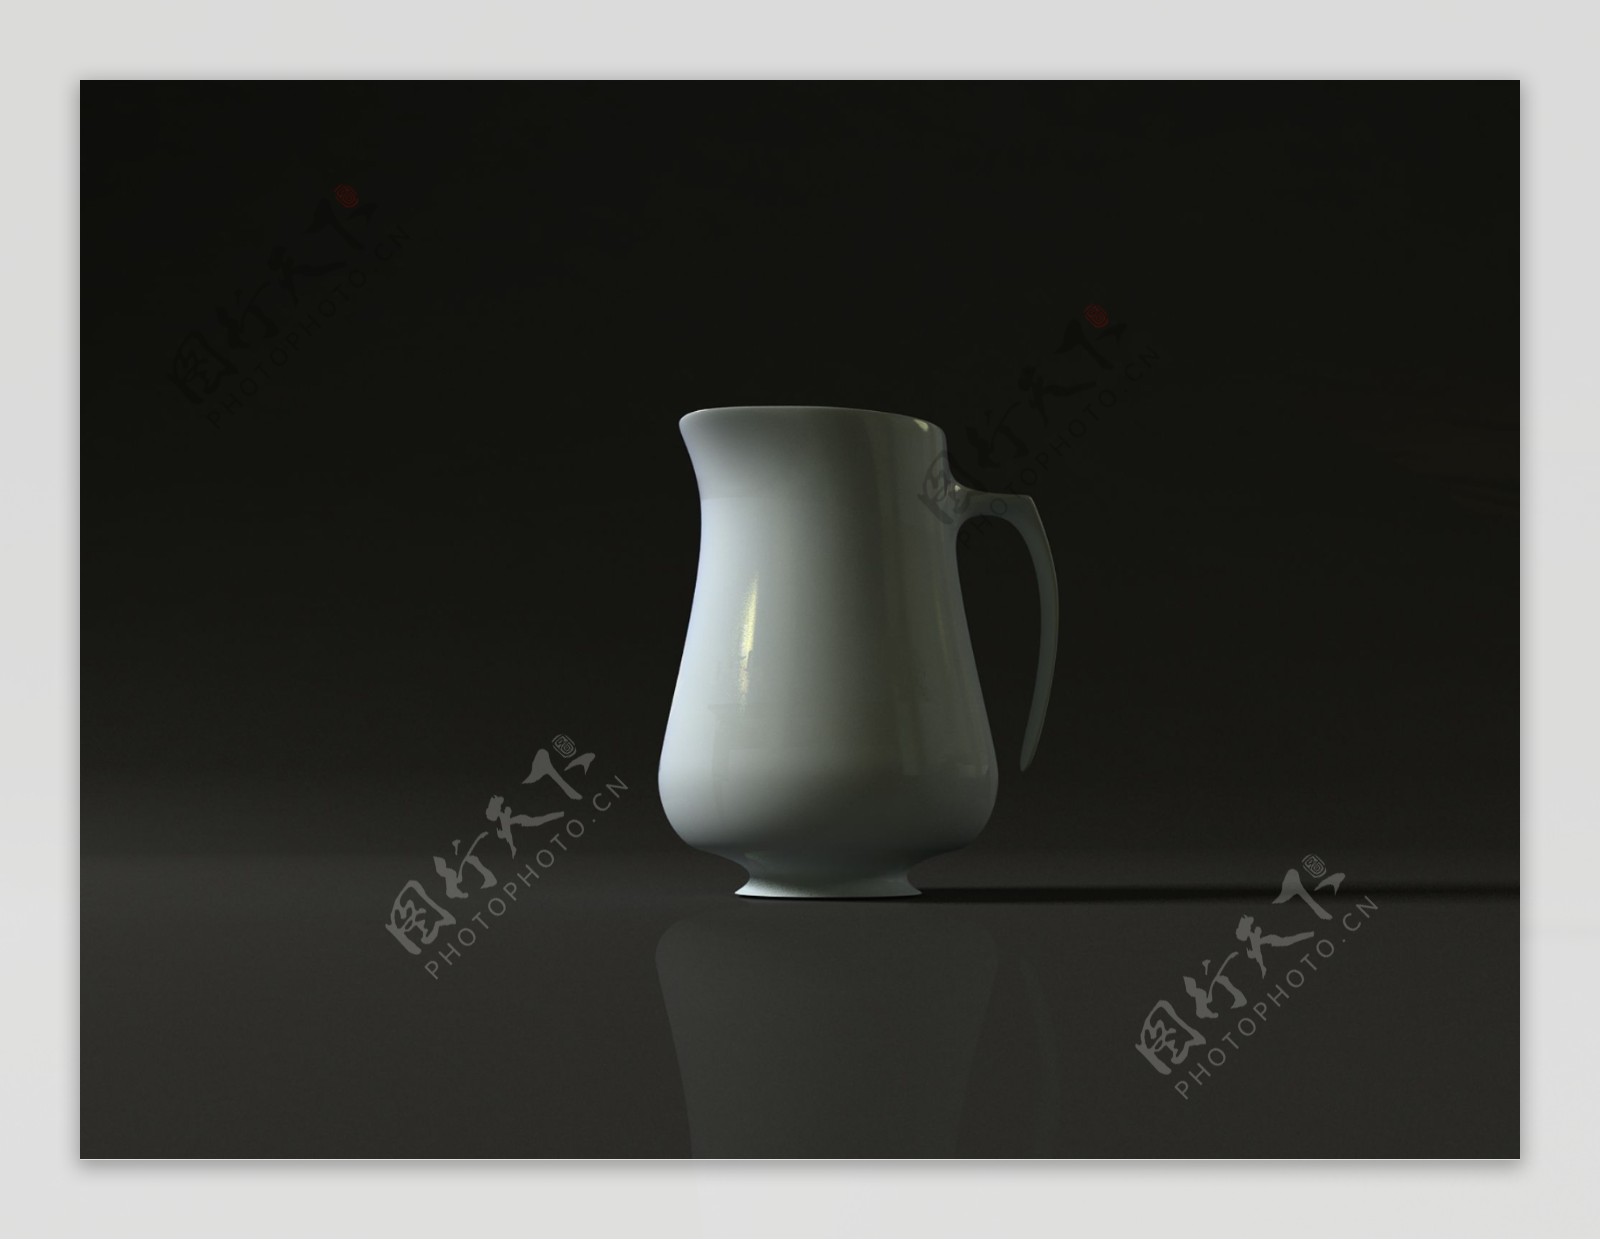 3d陶瓷杯子图片